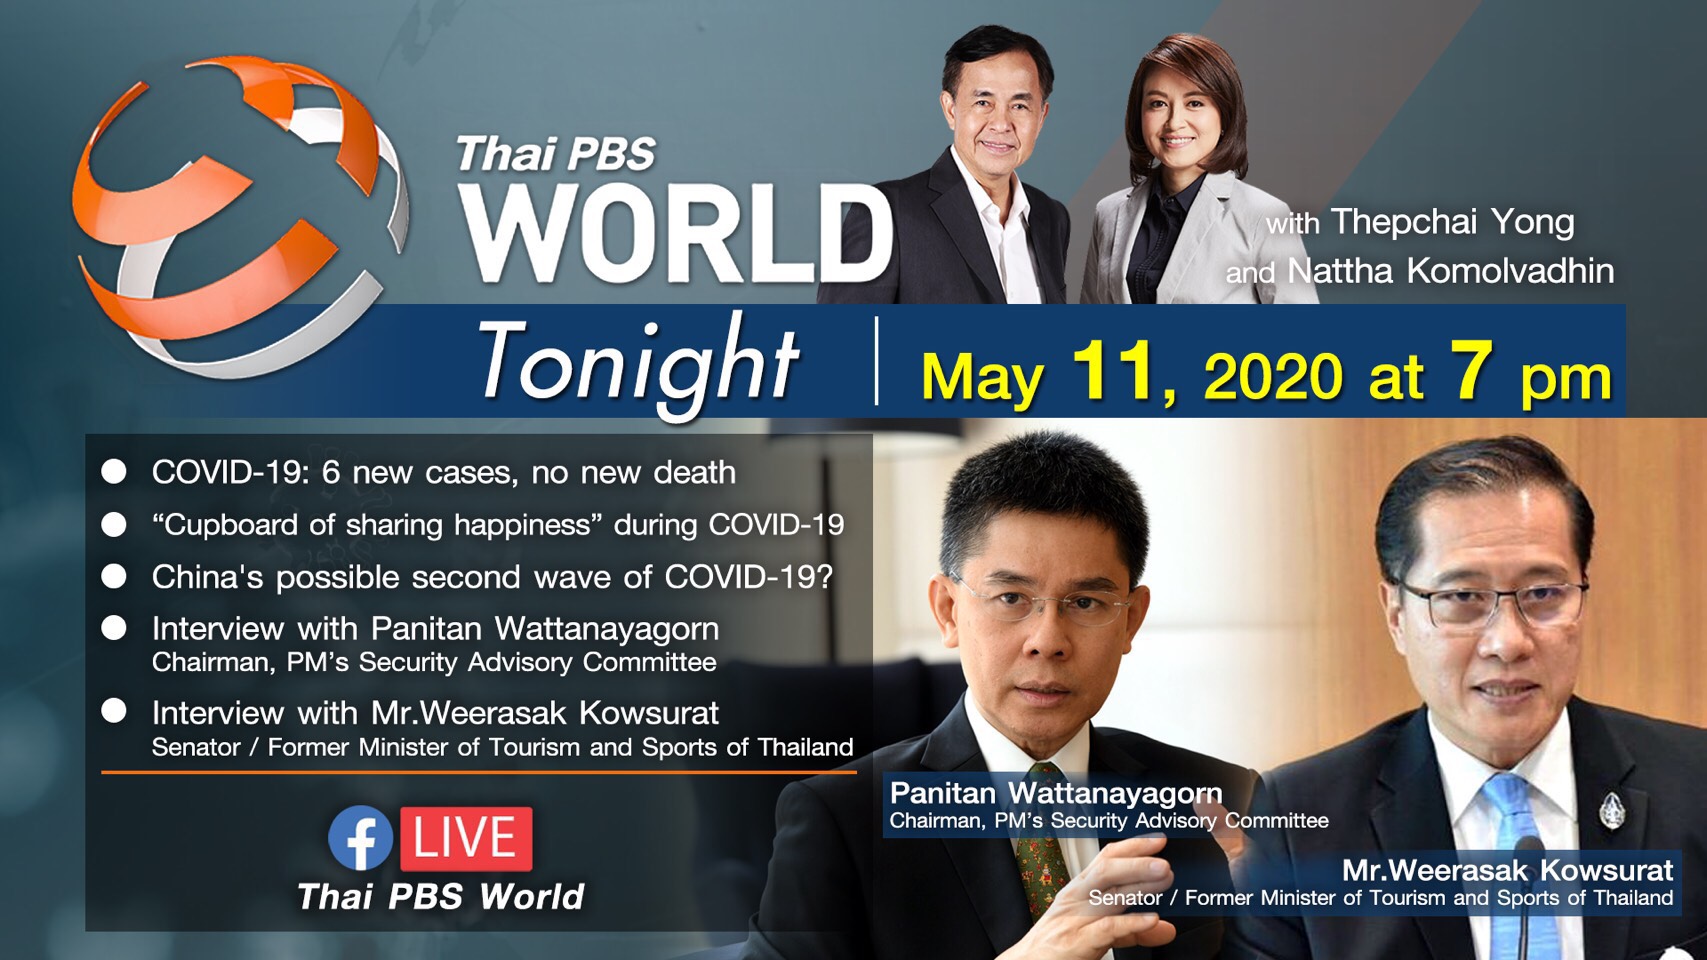 วันที่ 11 พฤษภาคม 2563  นายวีระศักดิ์ โควสุรัตน์ ให้สัมภาษณ์ผ่านรายการ Thai PBS World รายการสดเวลา 19.45-20.15 นาฬิกา ผ่านโปรแกรม ZOOM โดยมีผู้ดำเนินรายการ ได้แก่ คุณเทพชัย หย่อง และคุณณัฏฐา โกมลวาทิน ในประเด็น  “วิกฤตการณ์การระบาดของโควิด-19 ผลกระทบต่อภา